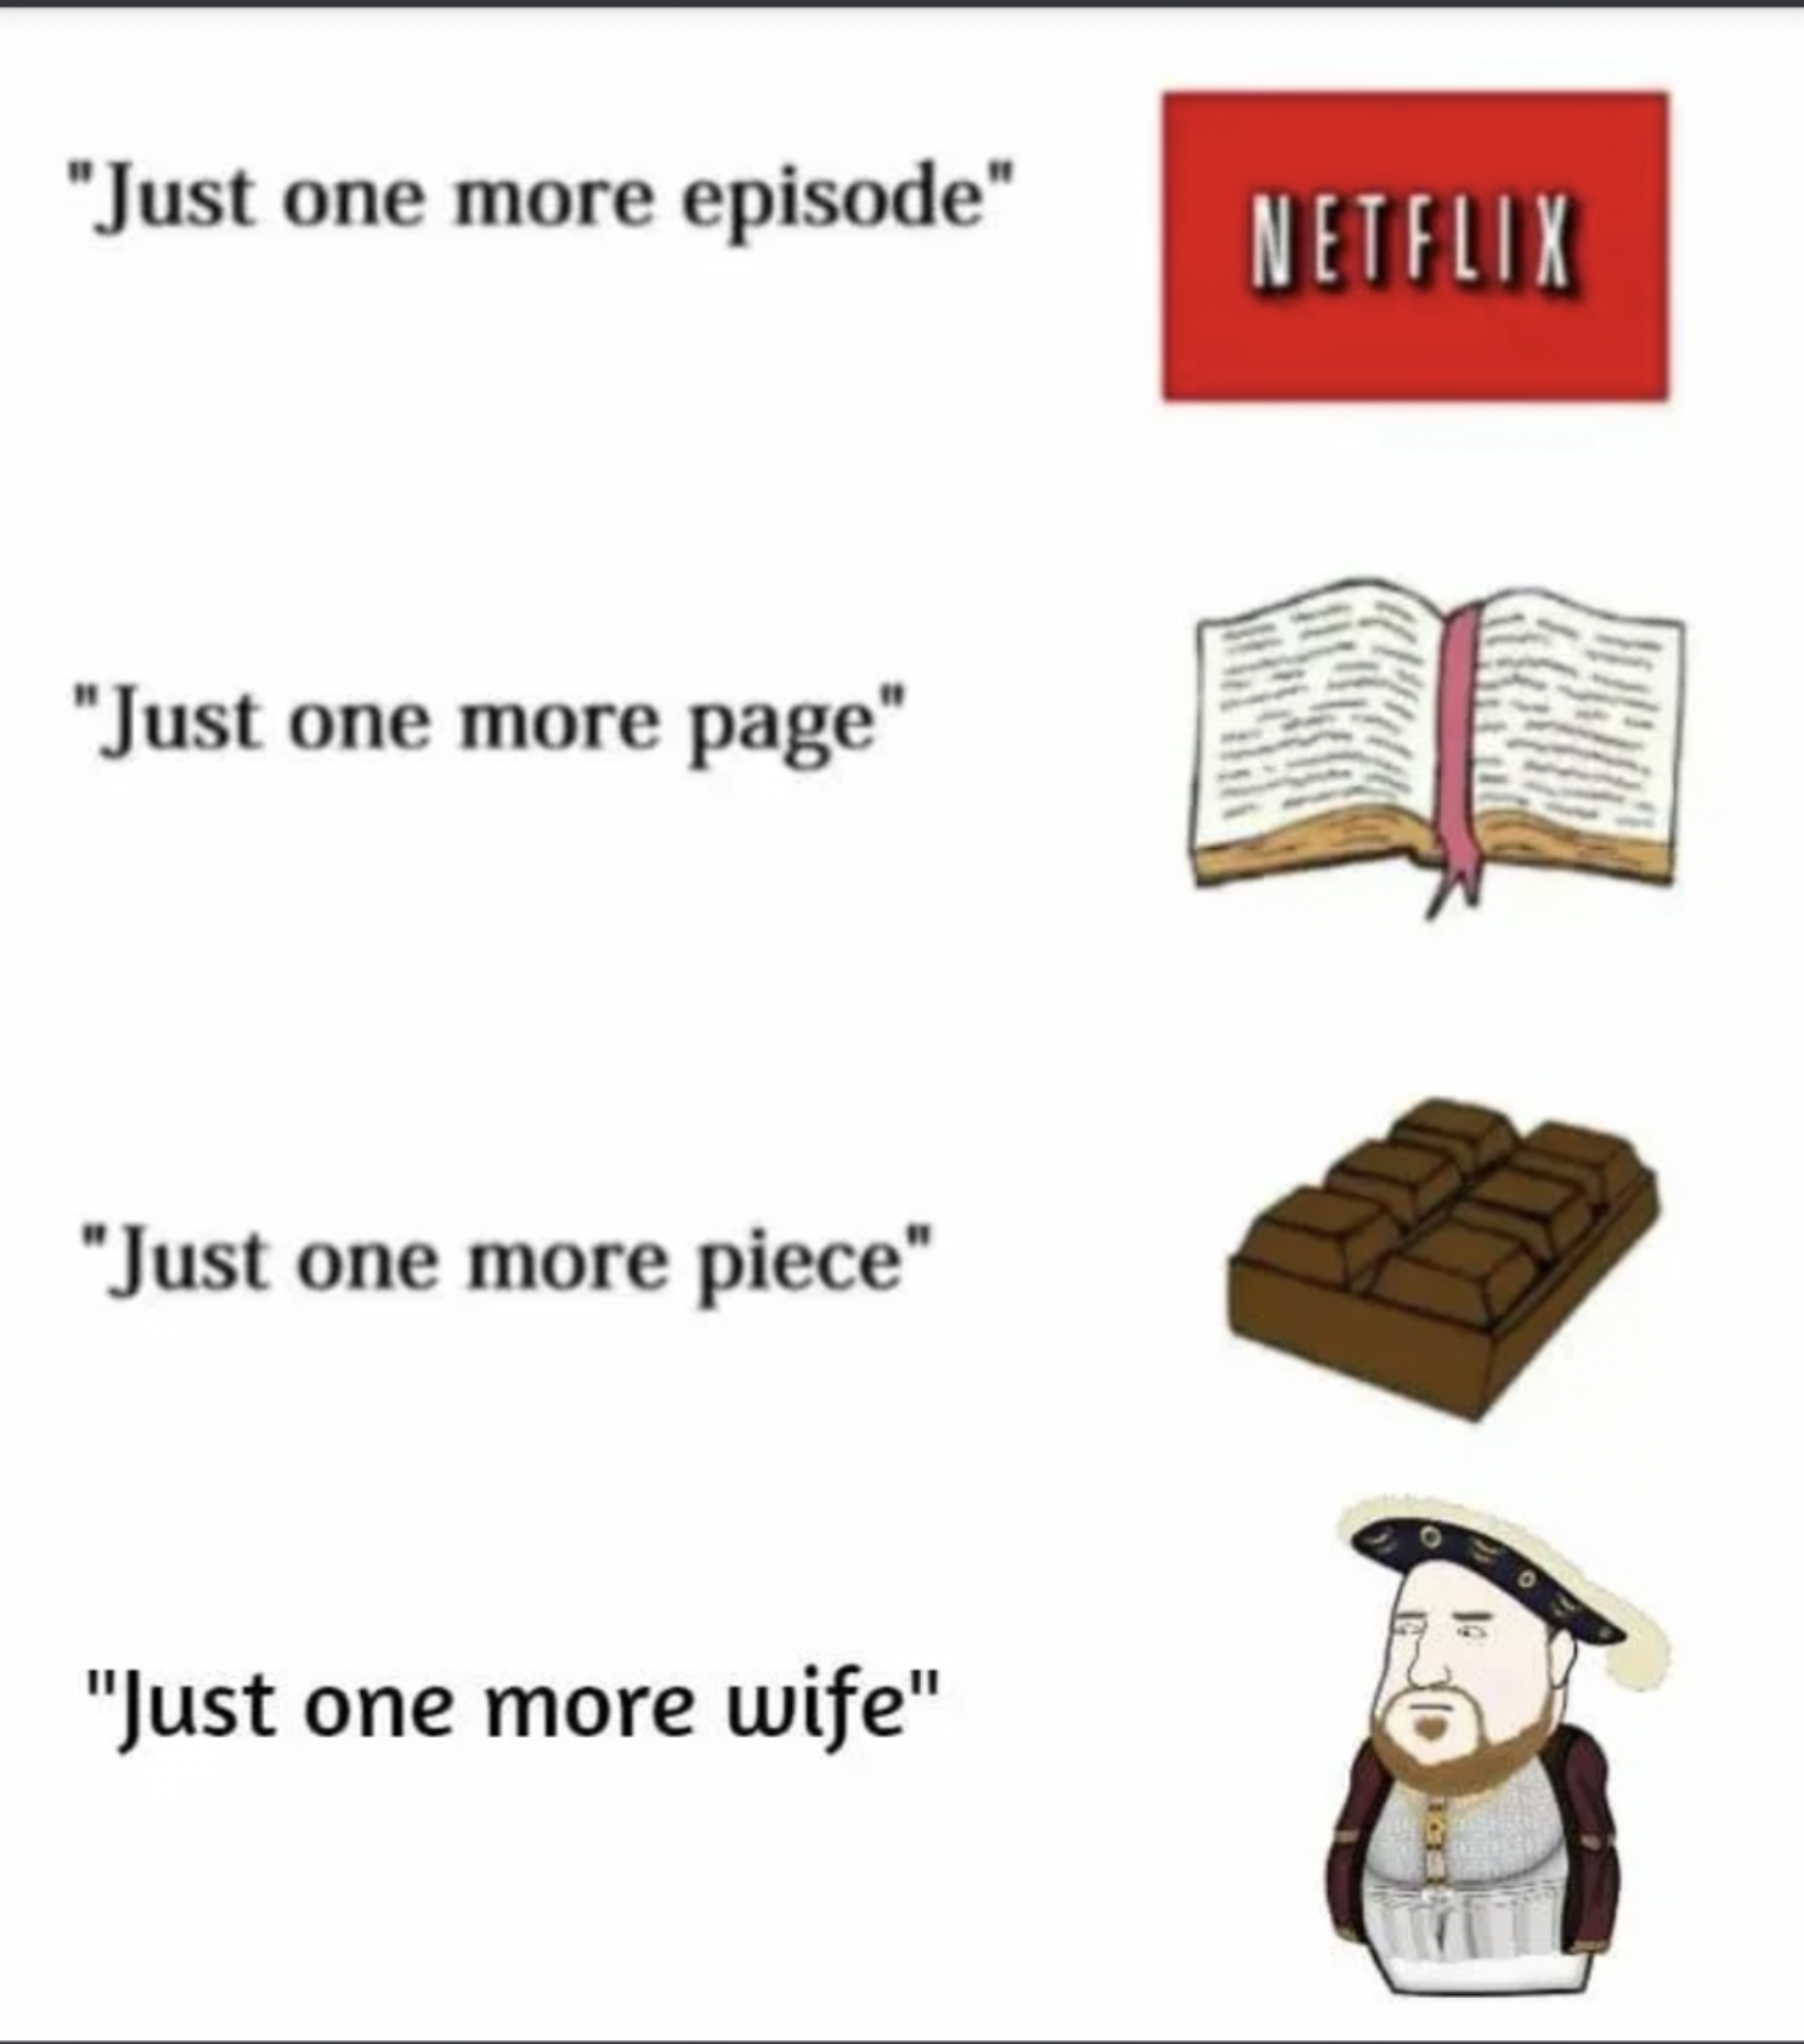 funny memes - dank memes - just one more meme - "Just one more episode" Netflix "Just one more page" "Just one more piece" "Just one more wife"